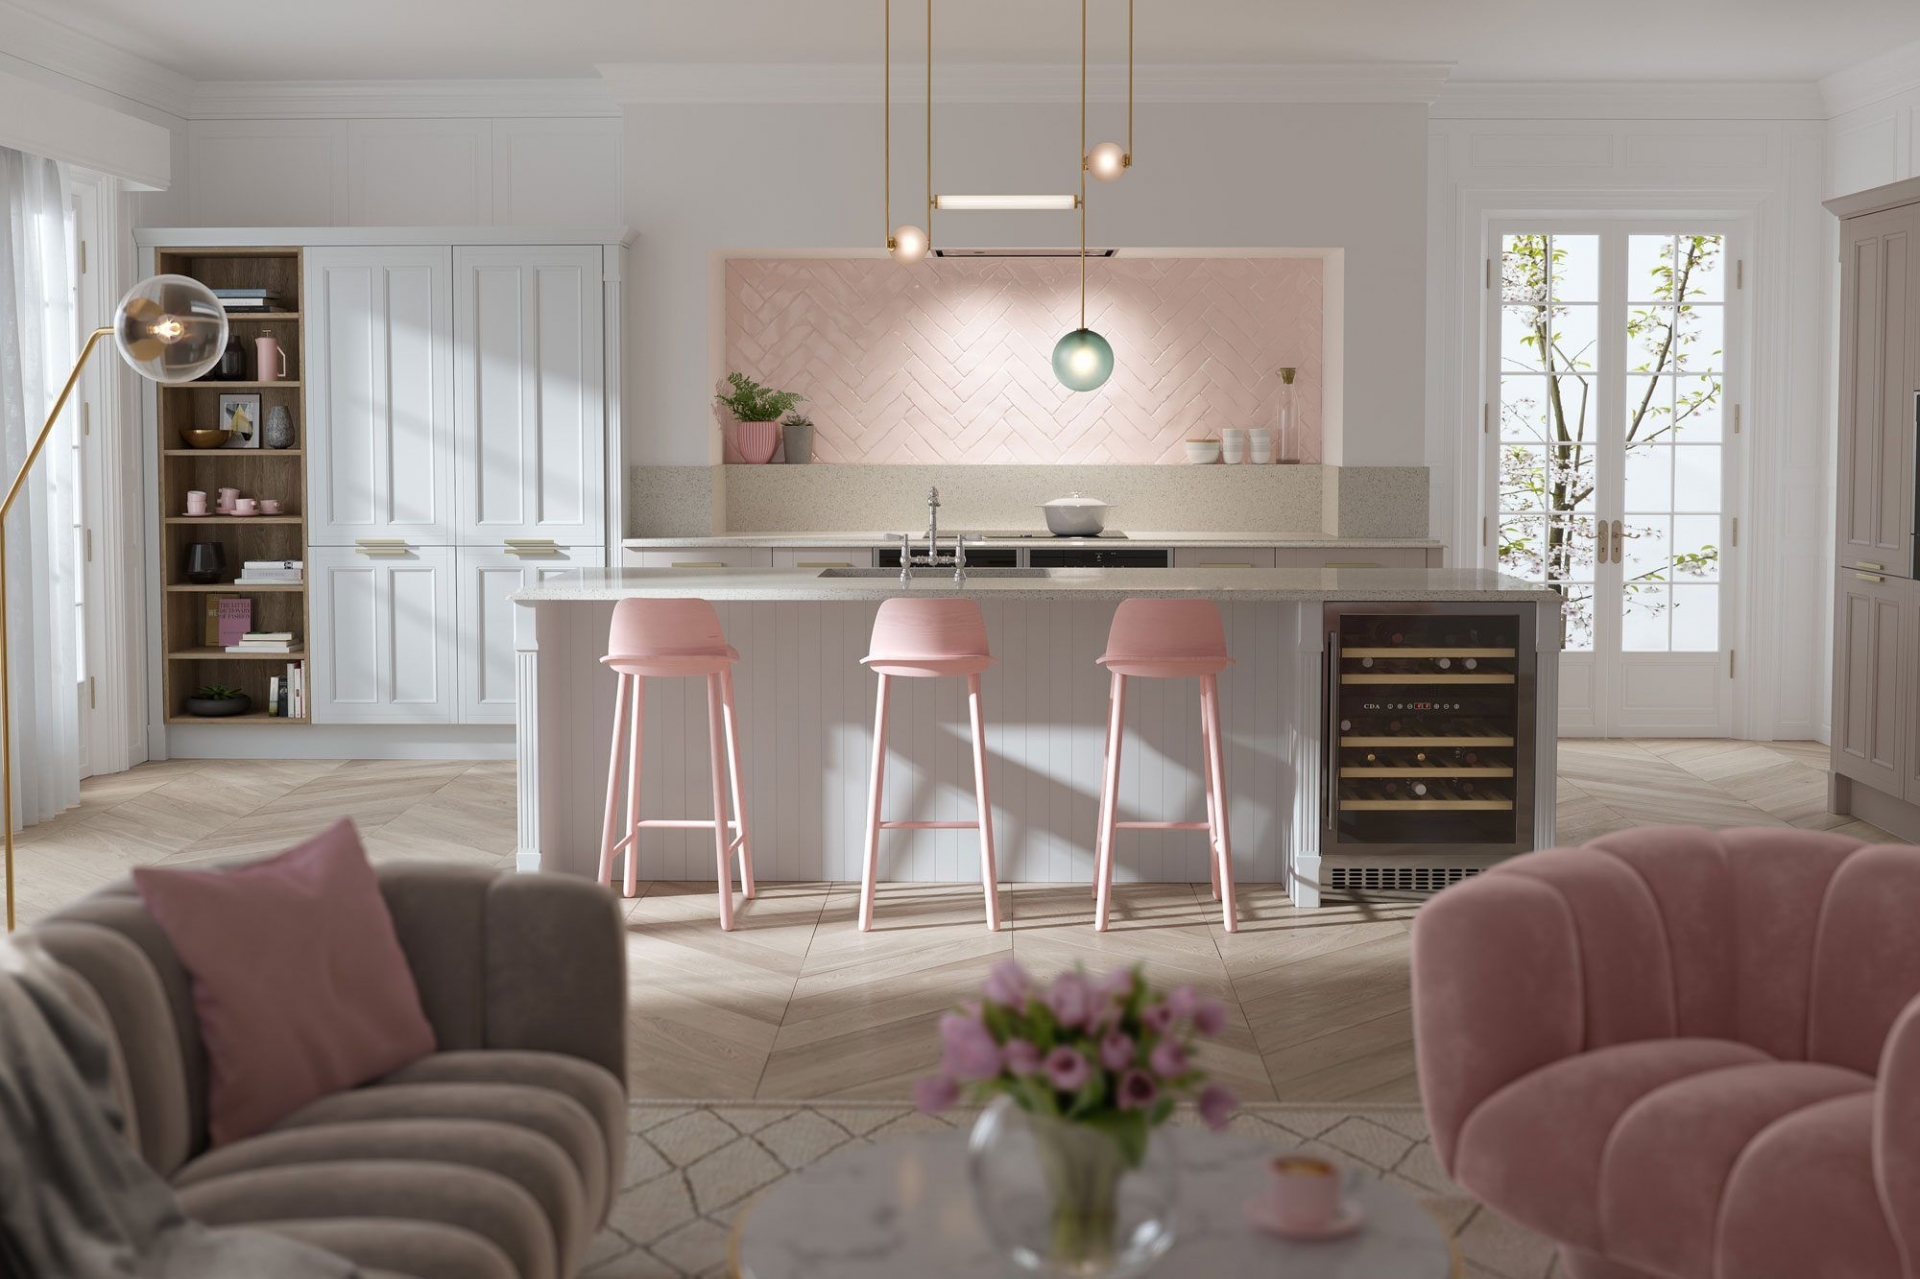 Sử dụng màu hồng đòi hỏi bạn phải cực kỳ tiết chế để tạo cảm giác vừa đủ nhã nhặn, vừa đủ dễ thương mà lại không bị hời hợt. Phòng bếp với backsplash ốp đá hình học, bộ ghế đẩu màu hồng, kết nối với ghế và gối tựa ở phòng khách mở tạo nên sự liên kết nhất định về màu sắc.